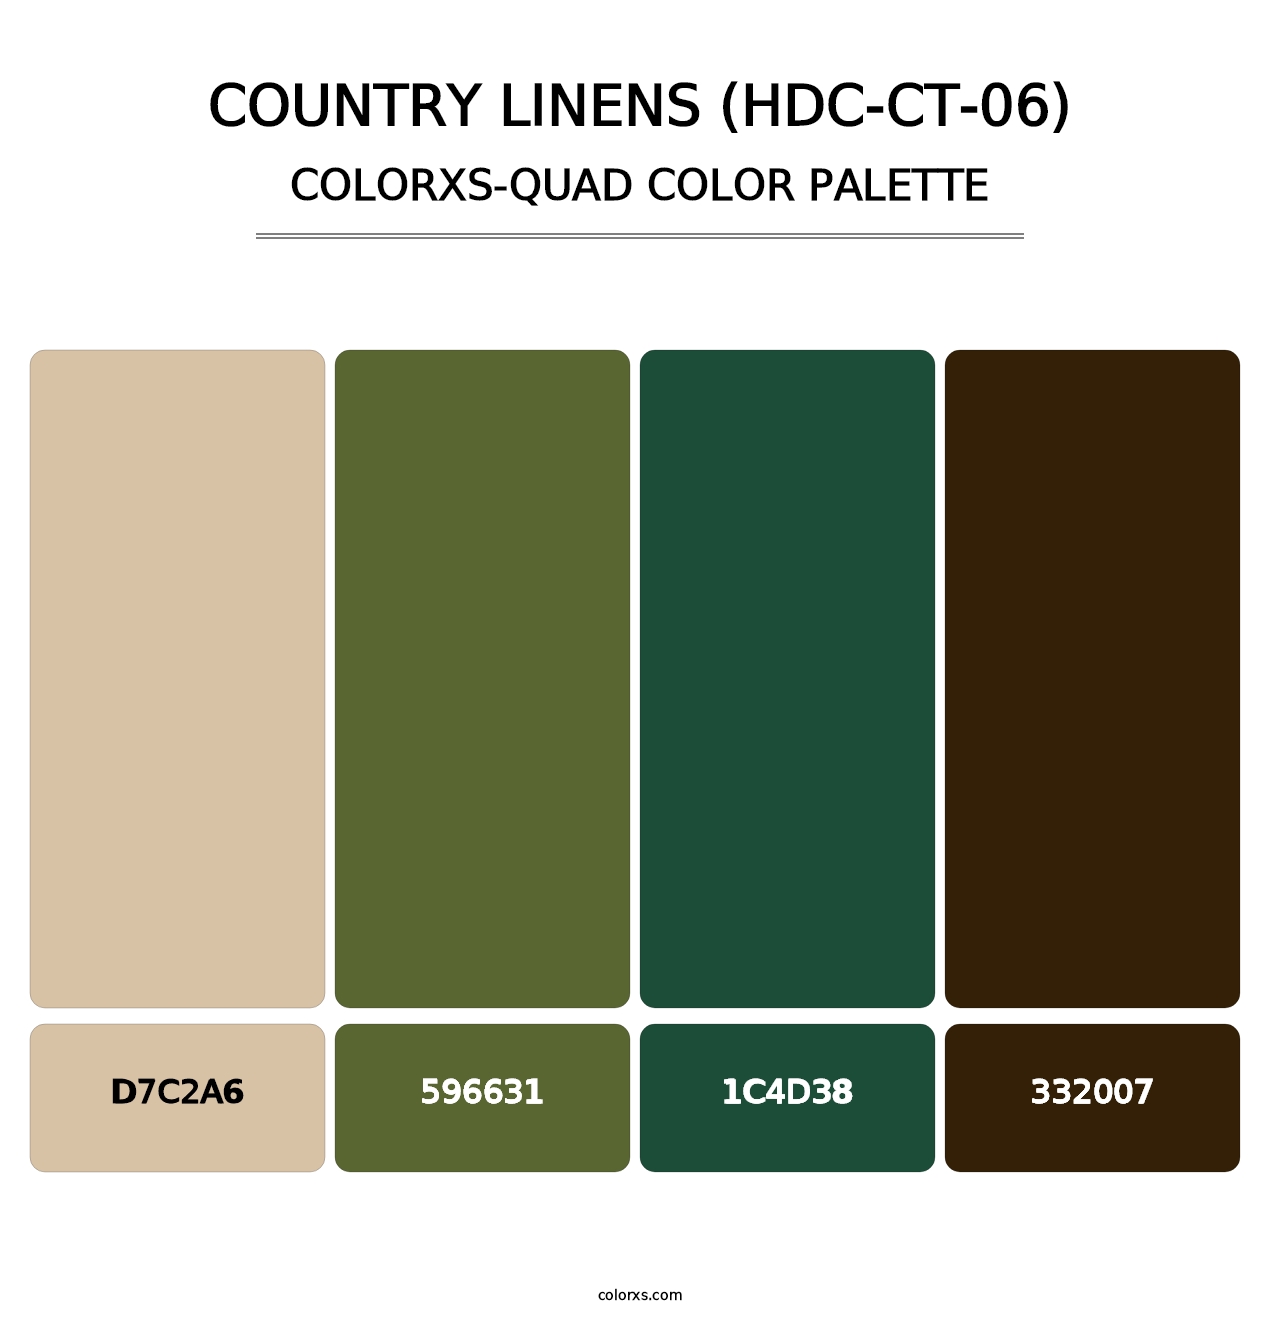 Country Linens (HDC-CT-06) - Colorxs Quad Palette